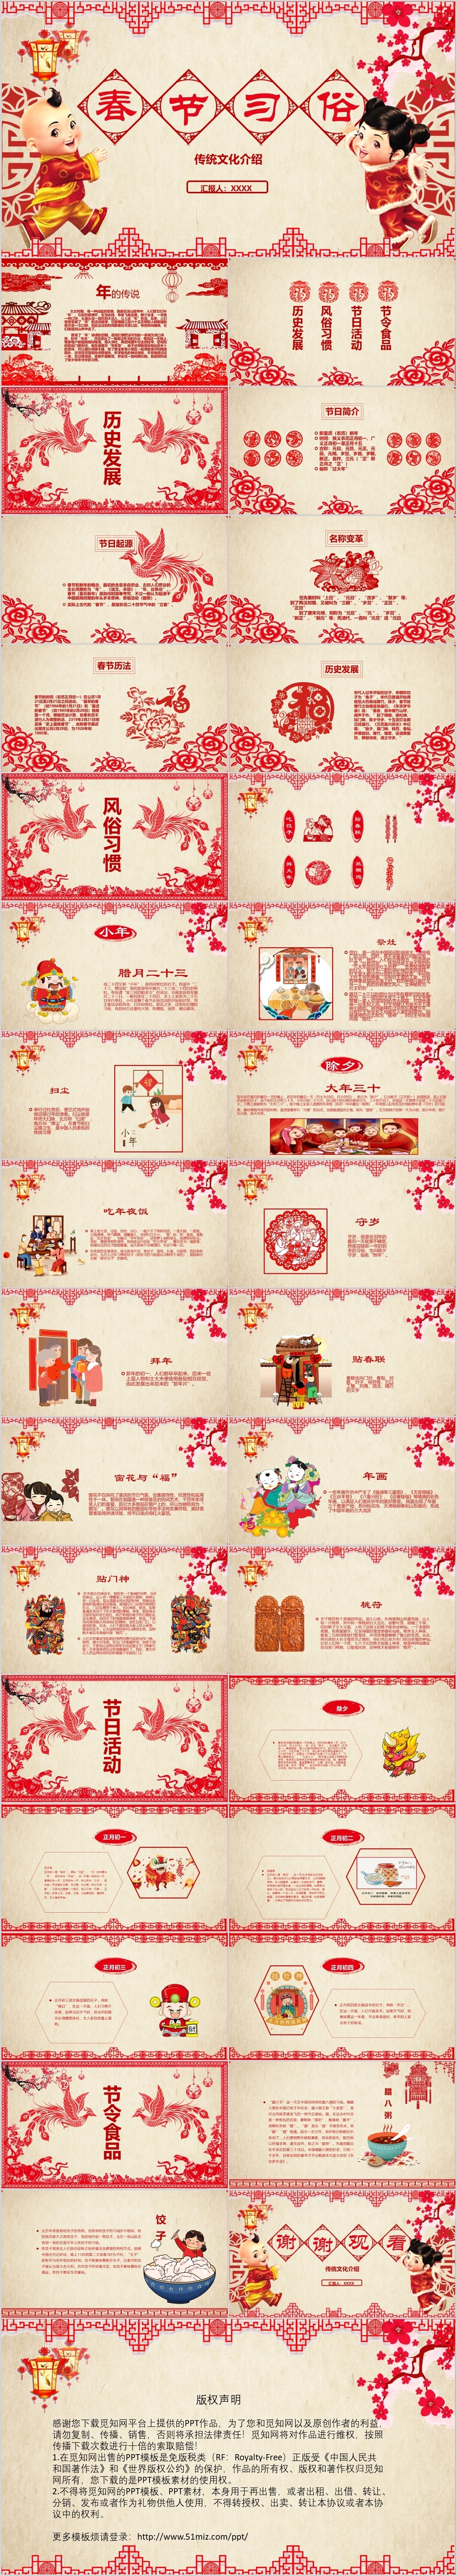 红色中国风剪纸春节传统节日习俗介绍PPT模板春节习俗